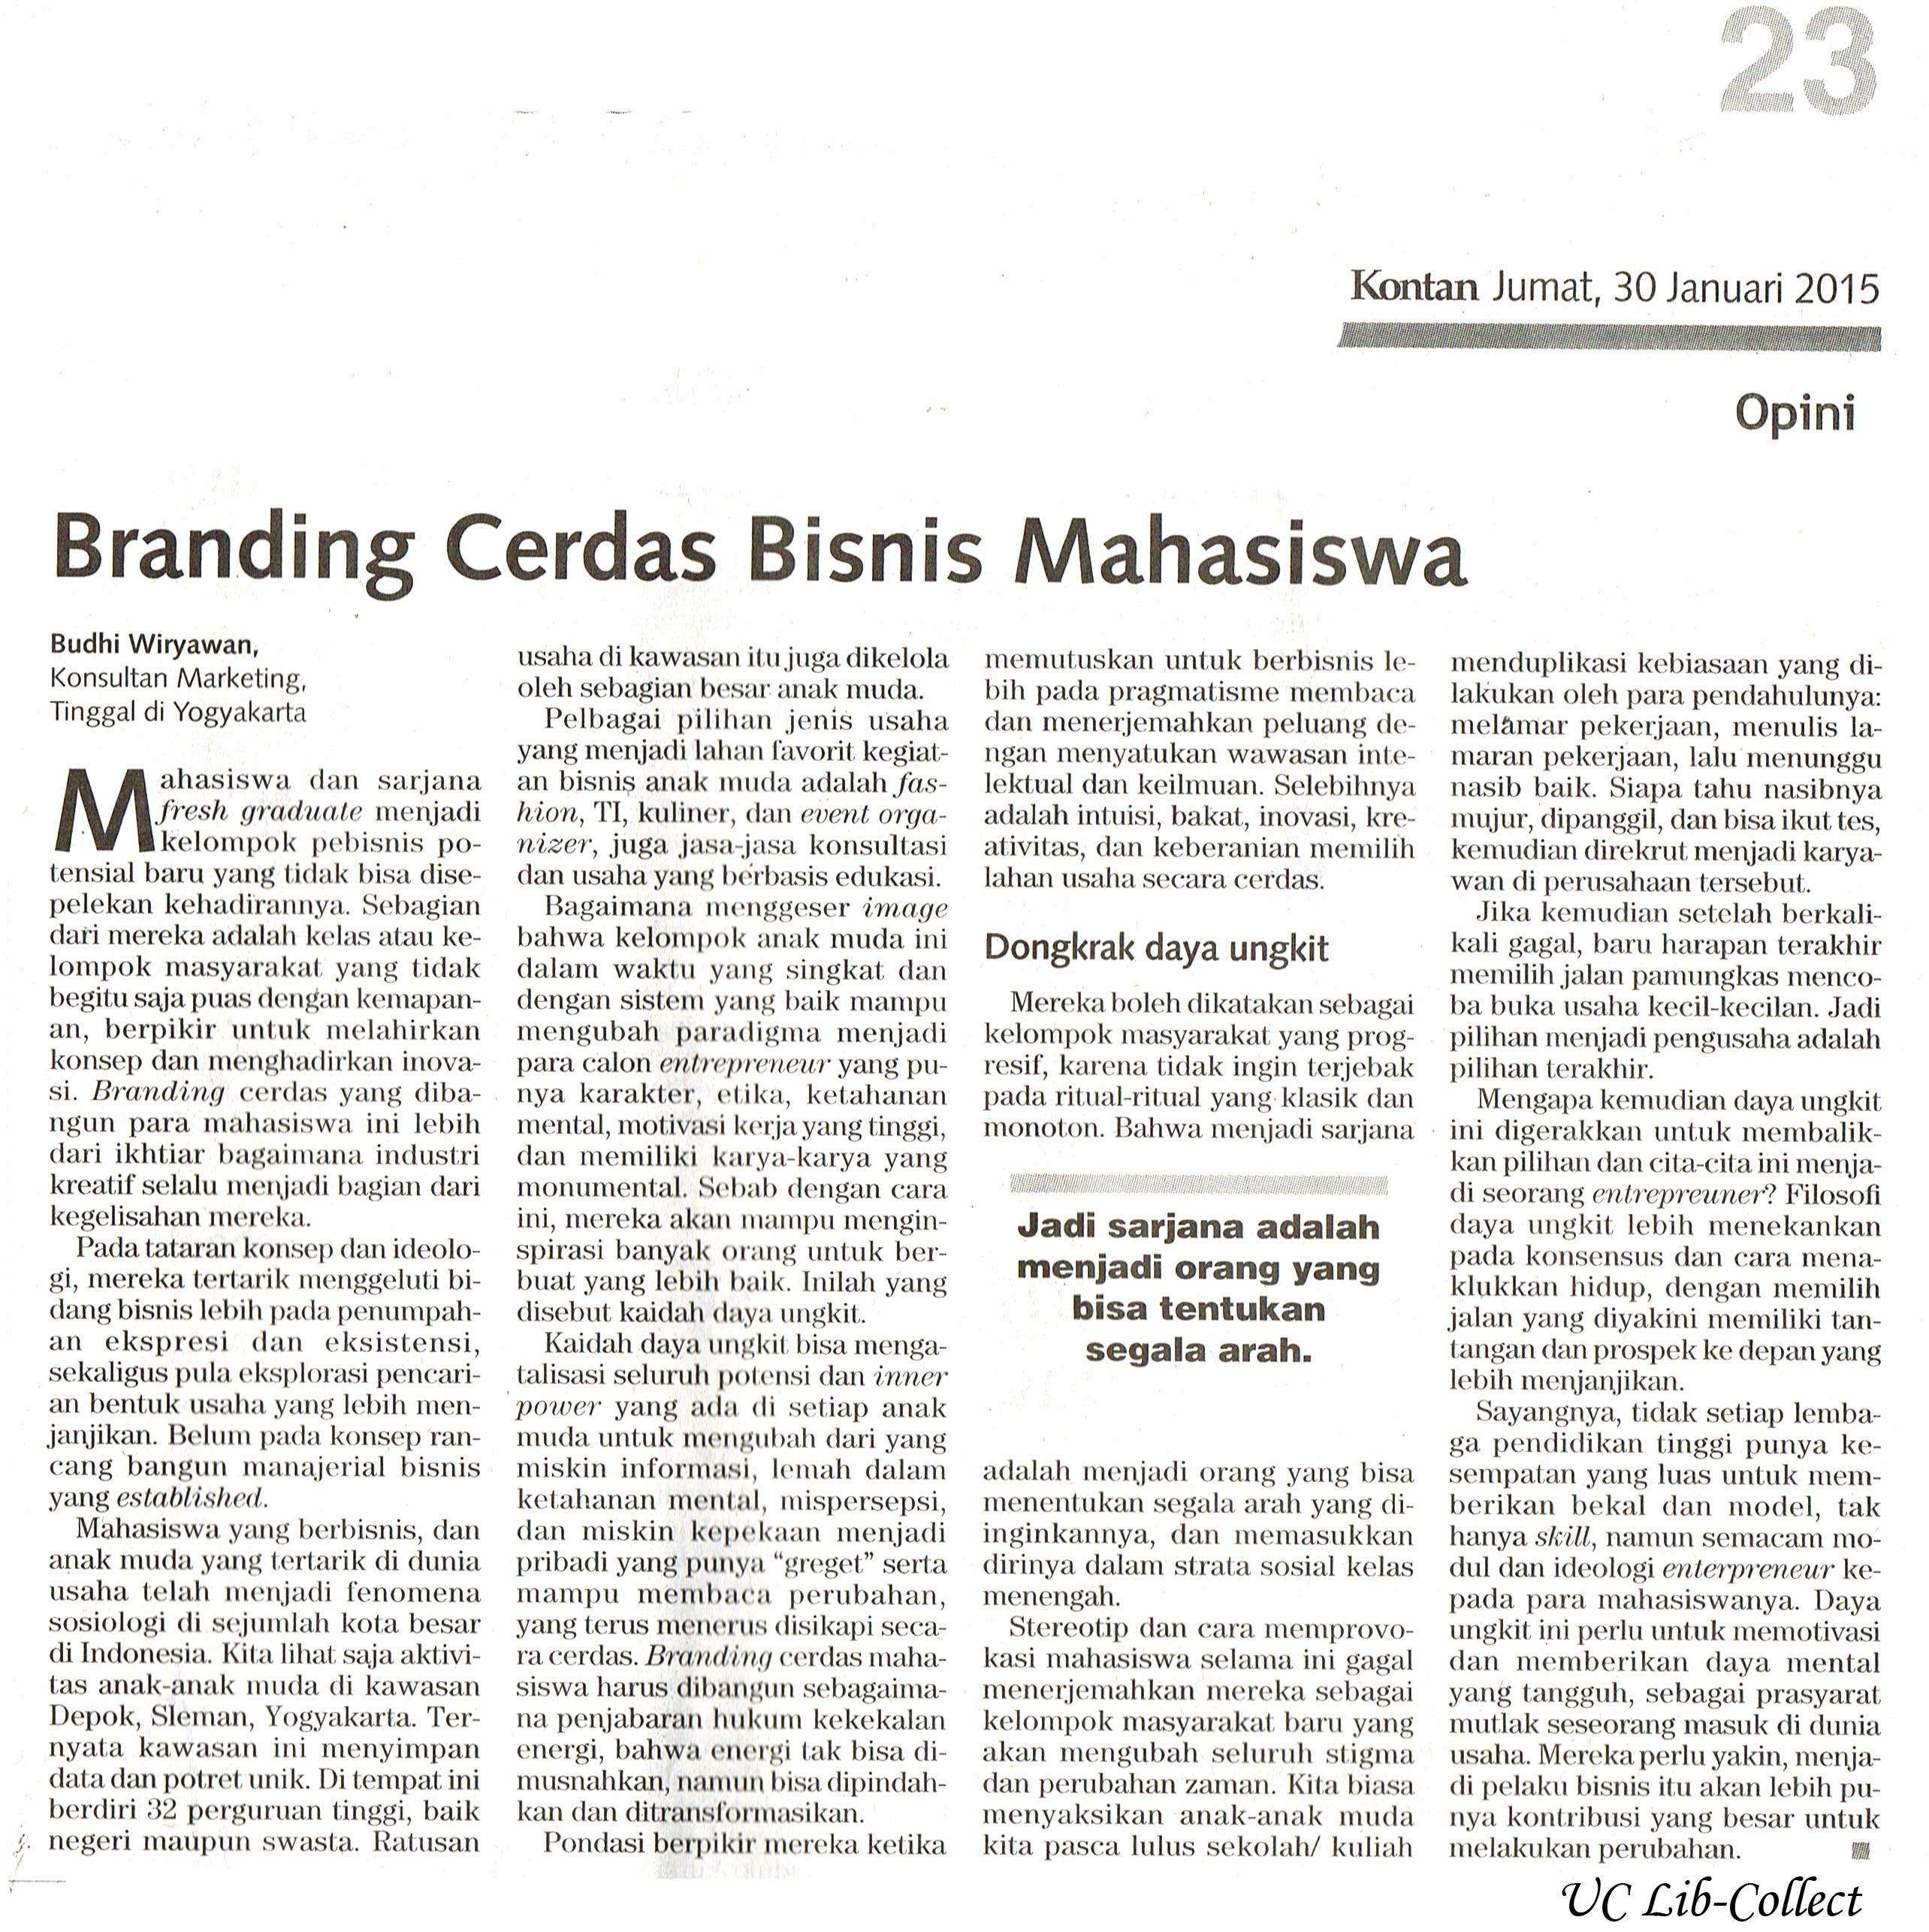 Branding Cerdas Bisnis Mahasiswa Kontan 30 Januari 2015 Hal 23